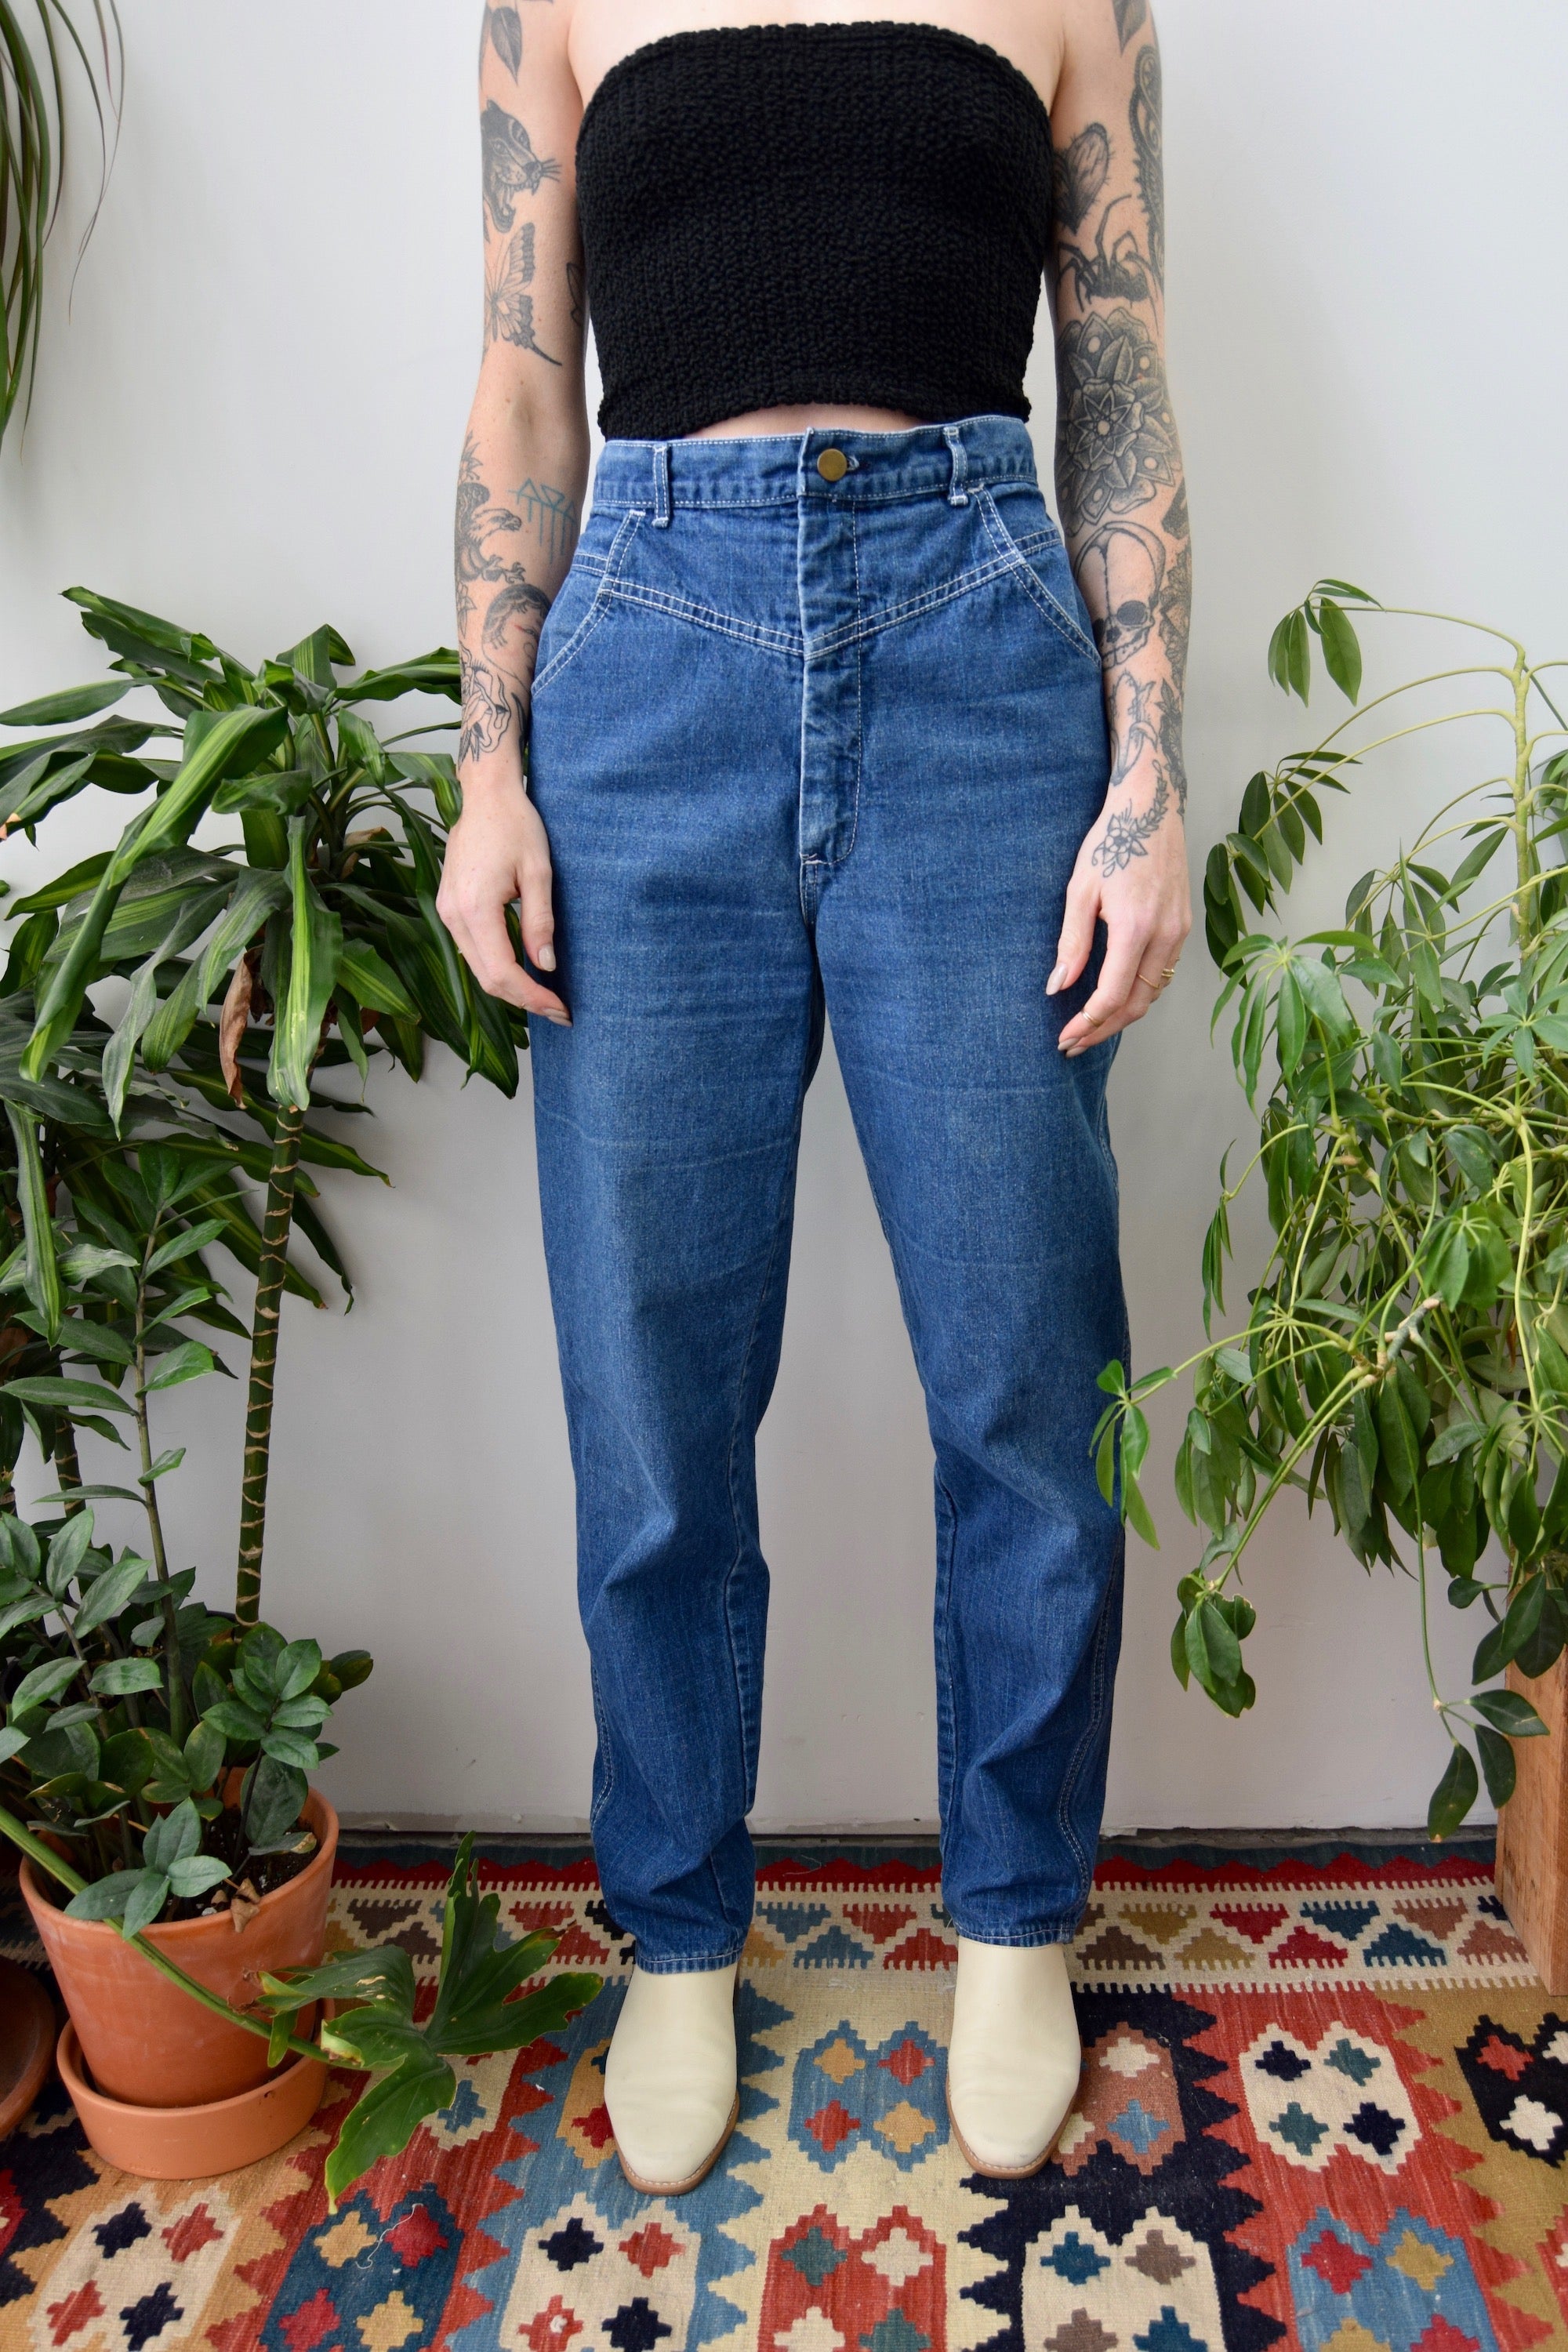 Eighties Pastel Grid Jeans